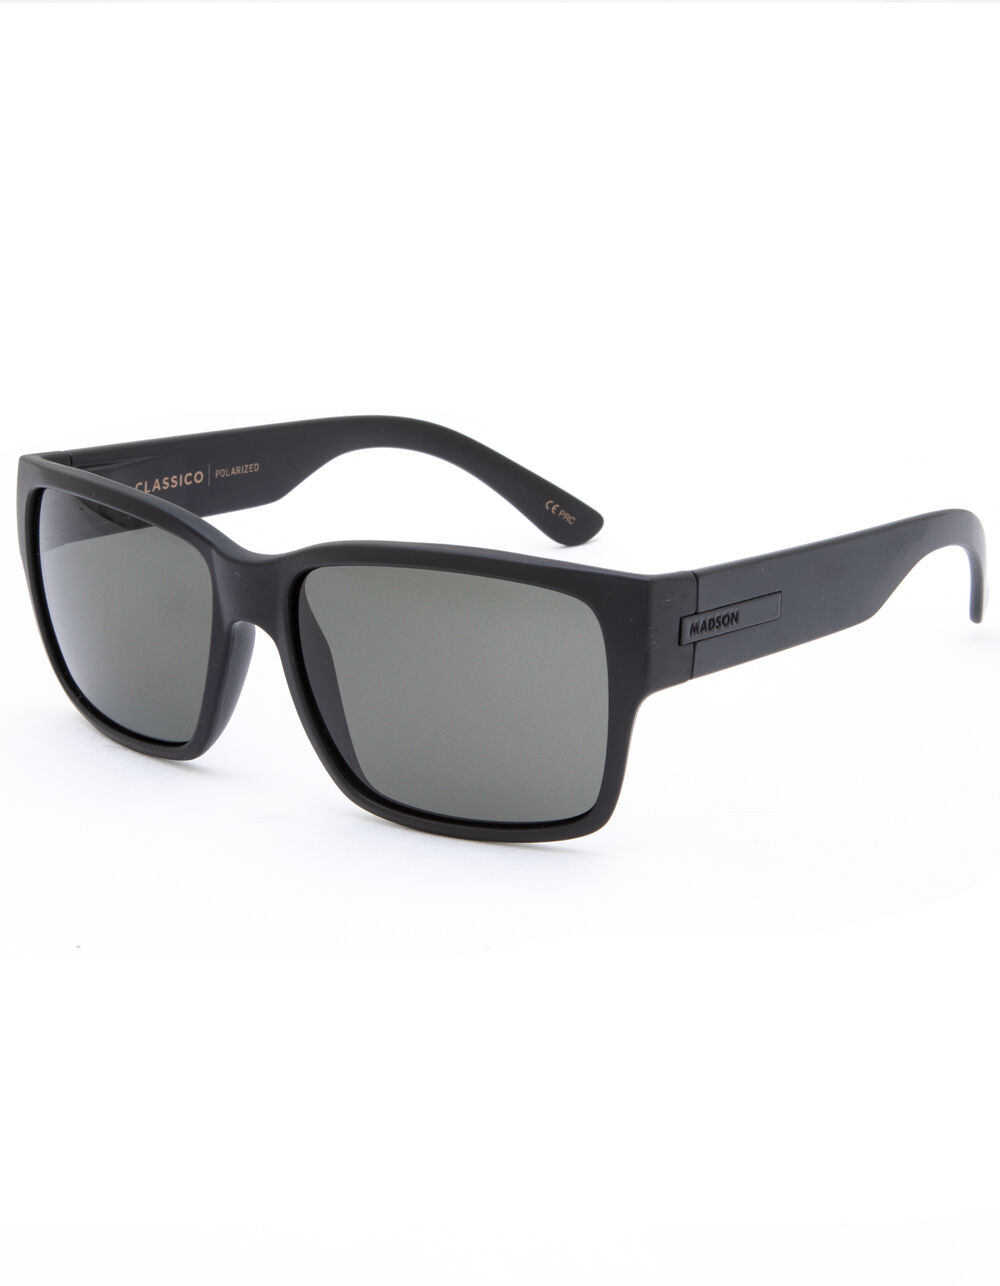 MADSON Classico Matte Black & Gray Polarized Sunglasses - MATTE BLACK ...